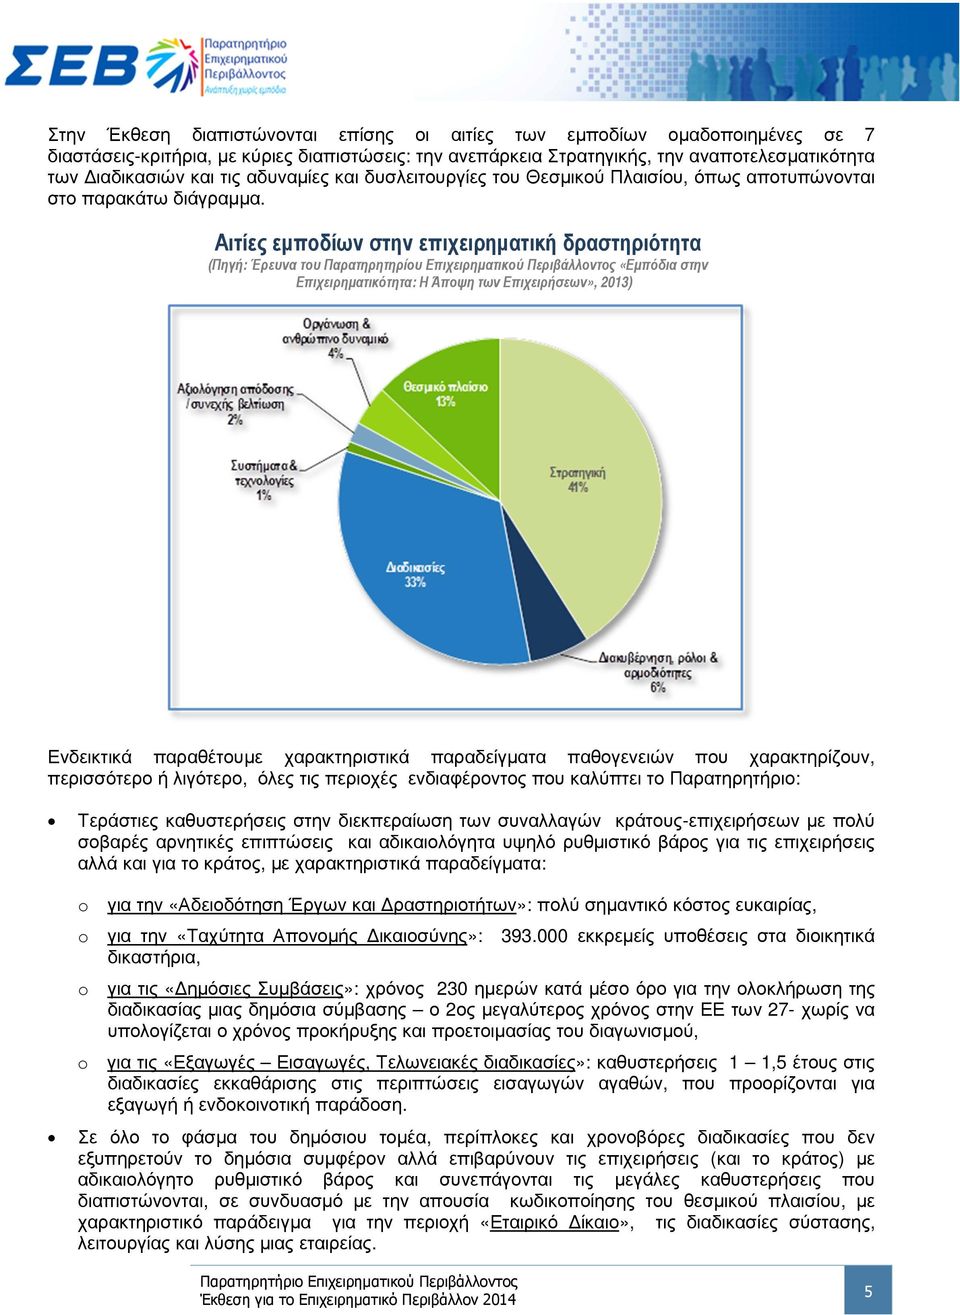 Αιτίες εµποδίων στην επιχειρηµατική δραστηριότητα (Πηγή: Έρευνα του Παρατηρητηρίου Επιχειρηµατικού Περιβάλλοντος «Εµπόδια στην Επιχειρηµατικότητα: Η Άποψη των Επιχειρήσεων», 2013) Ενδεικτικά